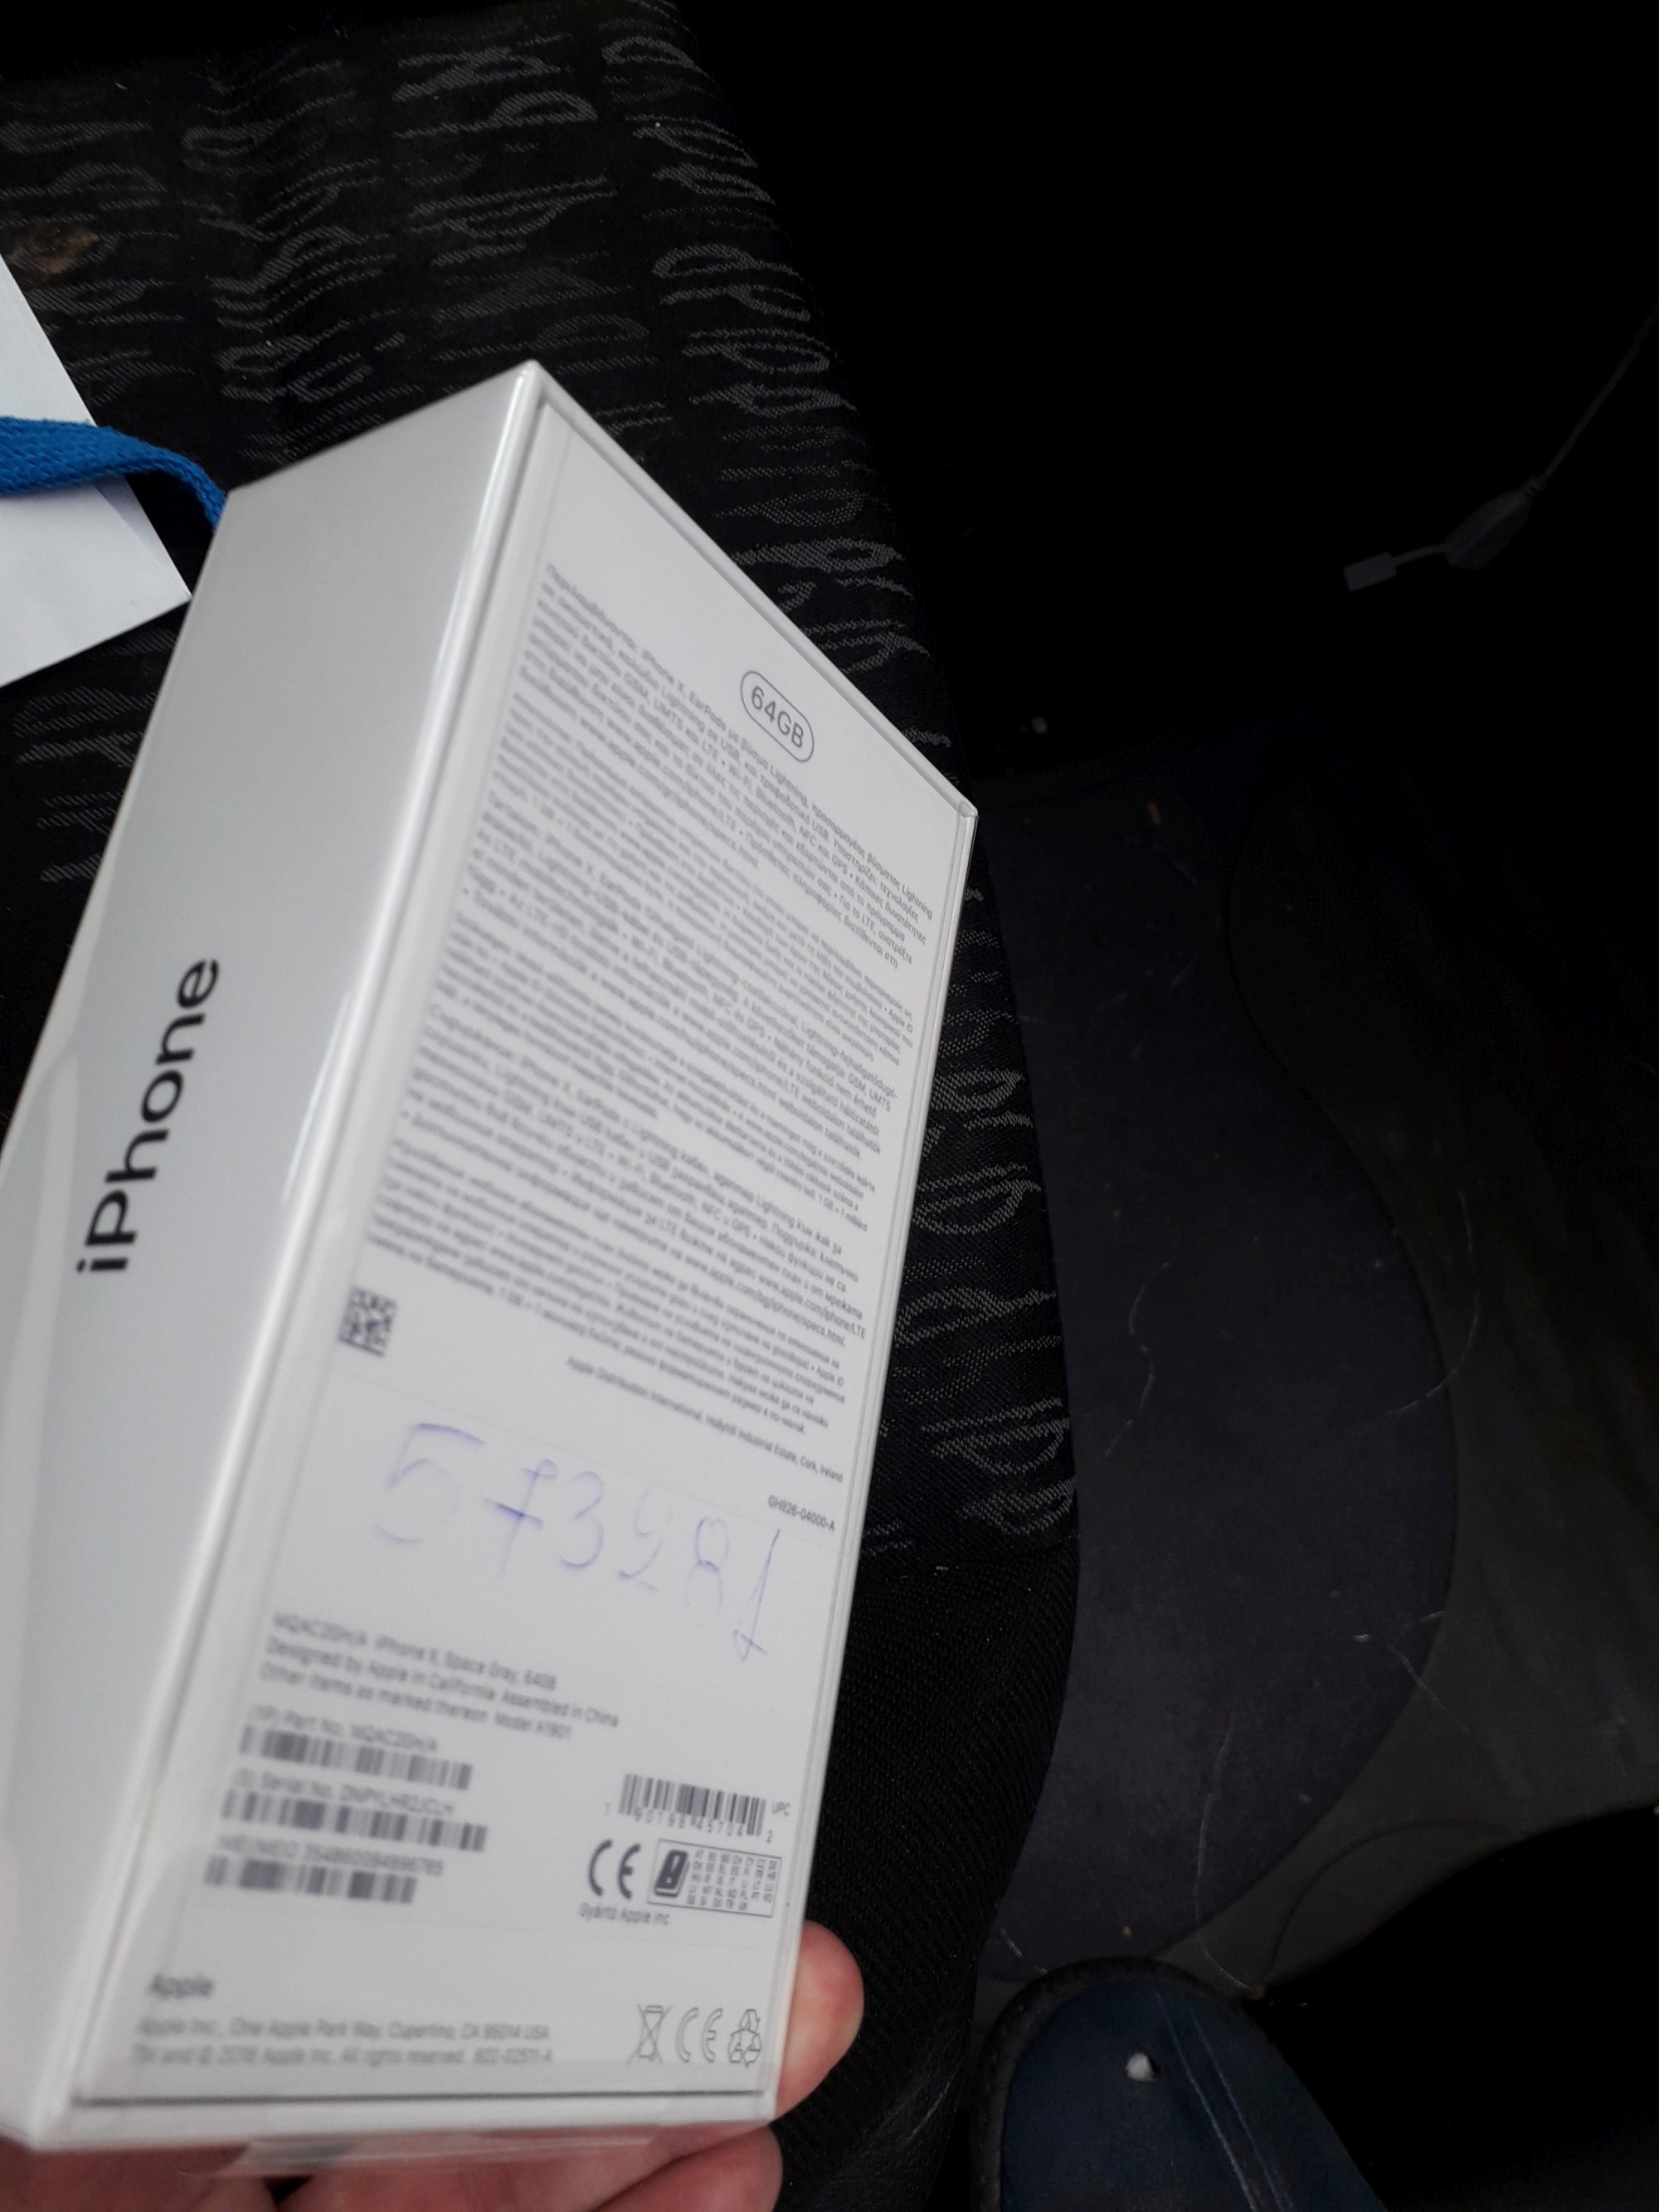 Iphone X 64Gb Space Grey - καινούργιο και σφραγισμένο | Αγγελία #1096